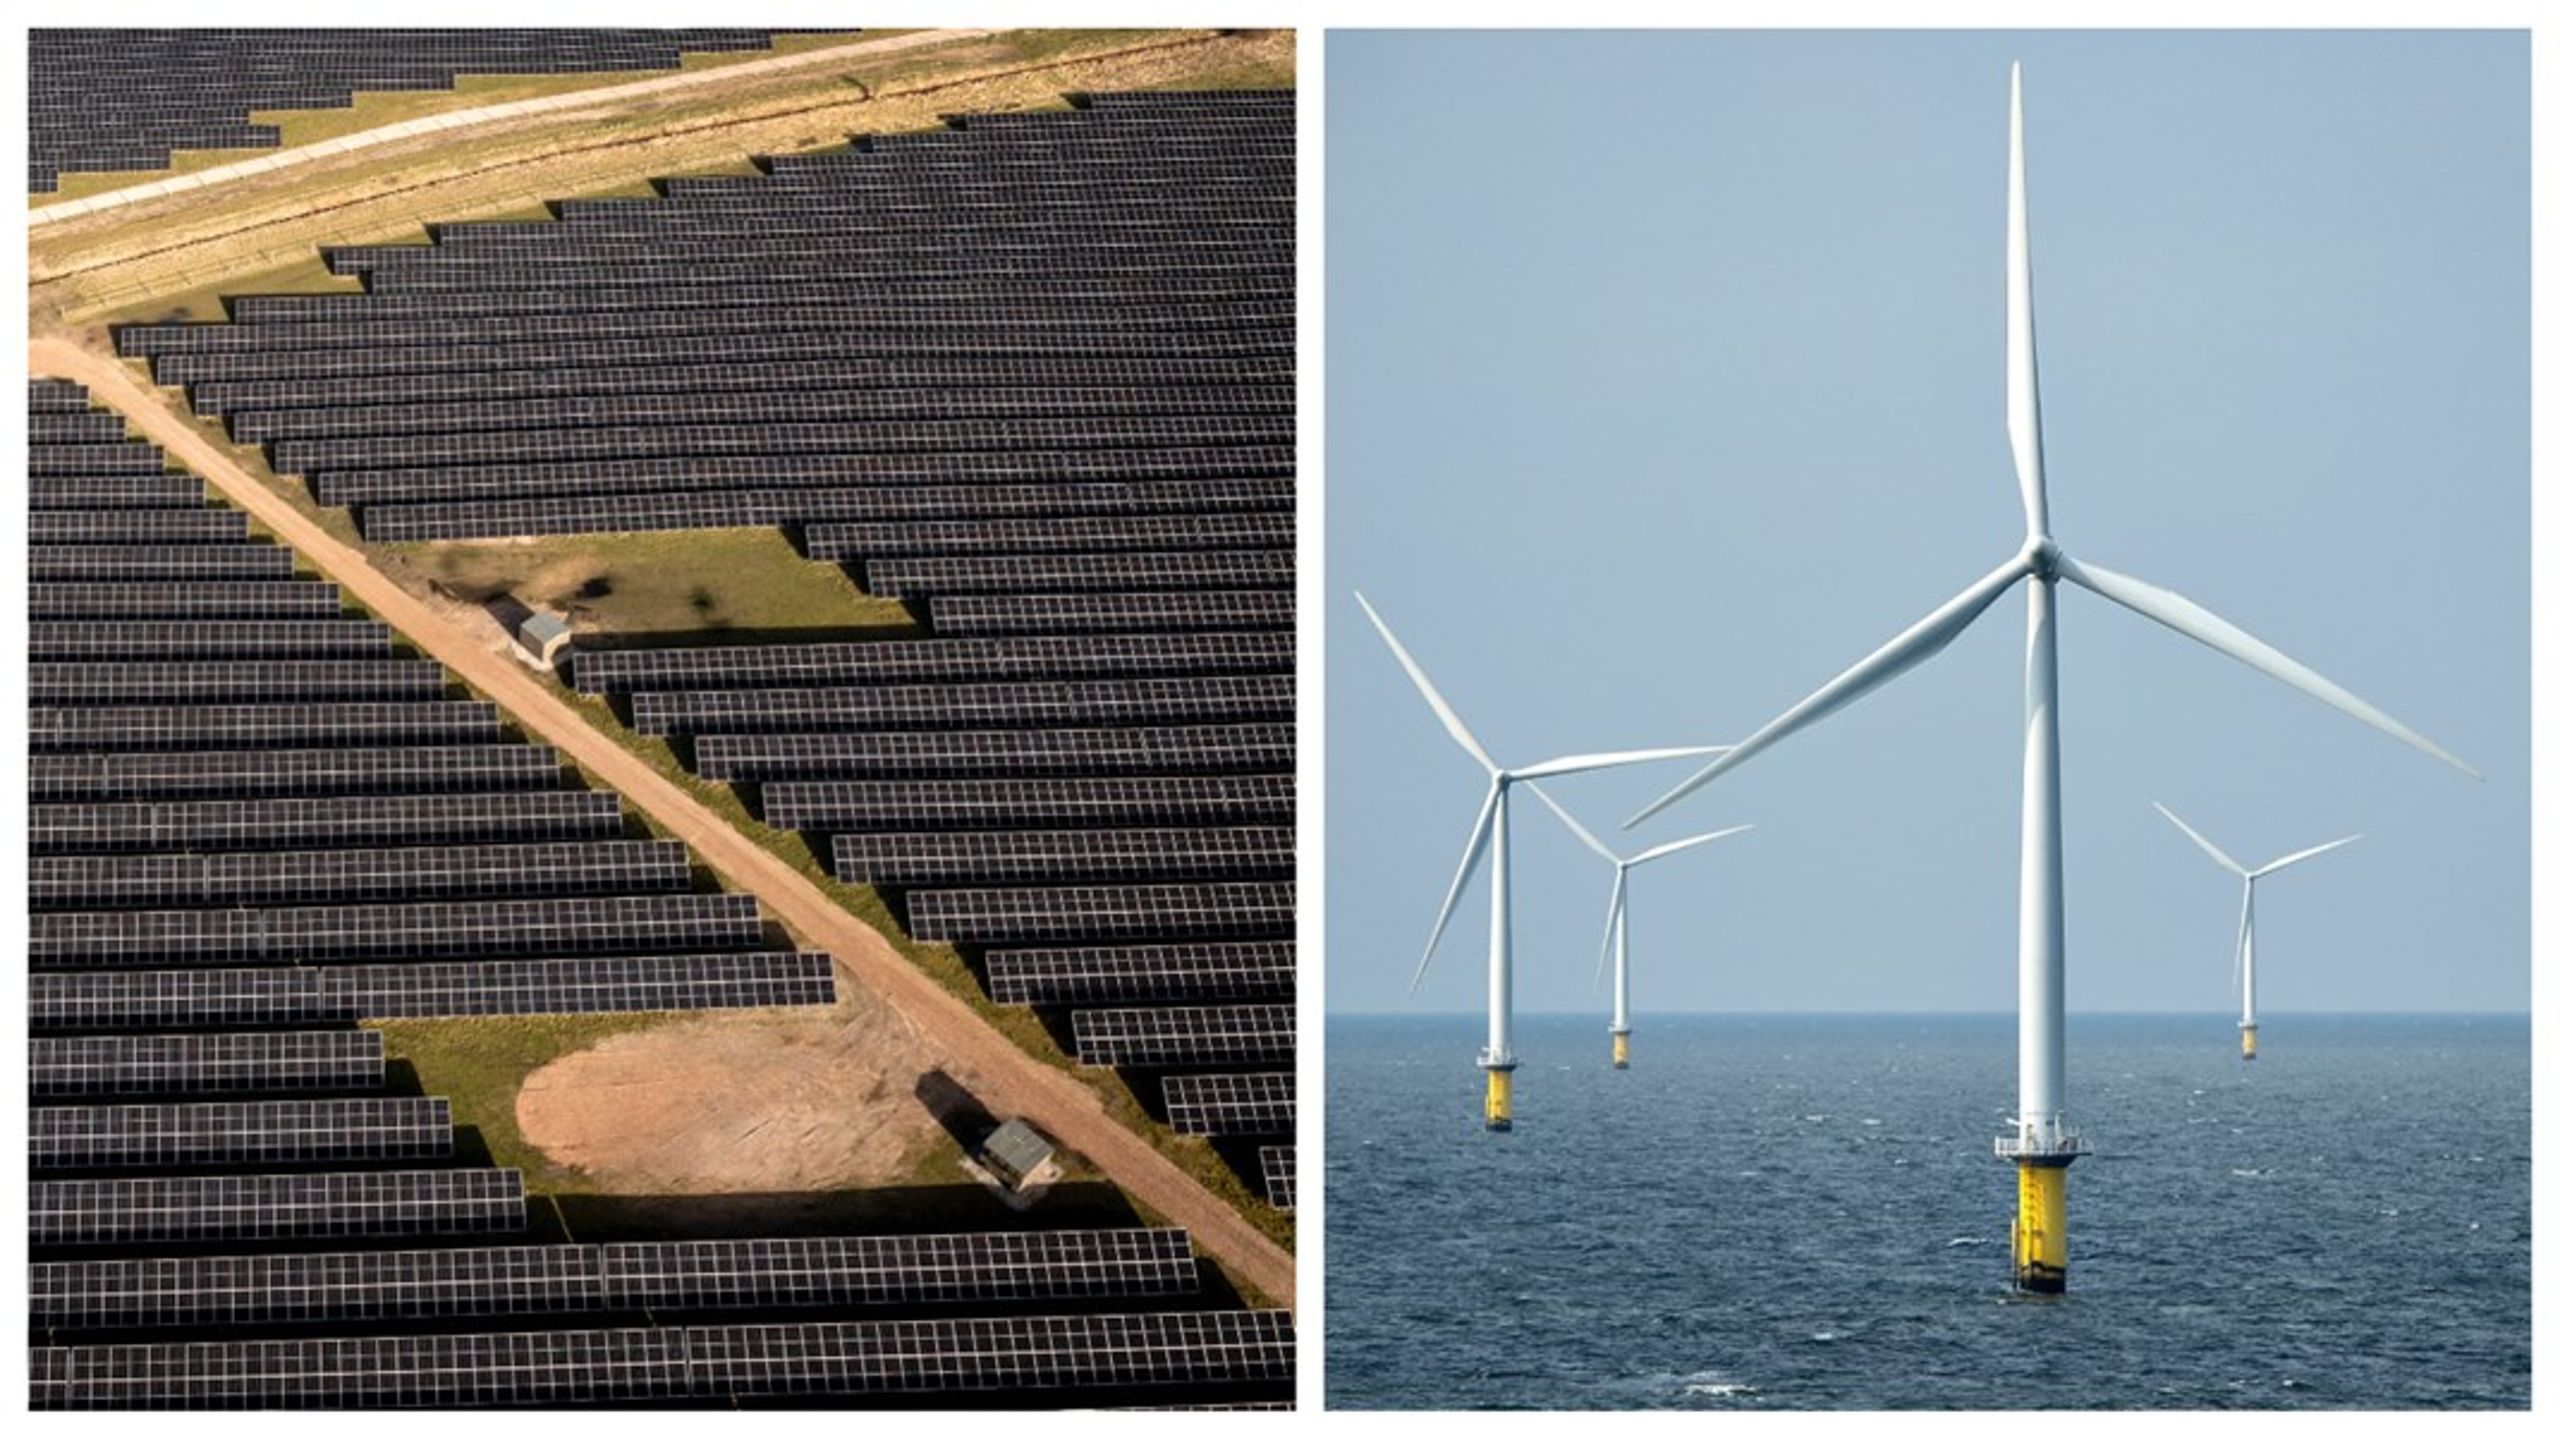 Omkostninger til sikring af forsyningssikkerheden er på et så beskedent niveau, at det ikke udfordrer Danmarks planer for at basere os på sol og vind i energiforsyningen, skriver Klimarådet.